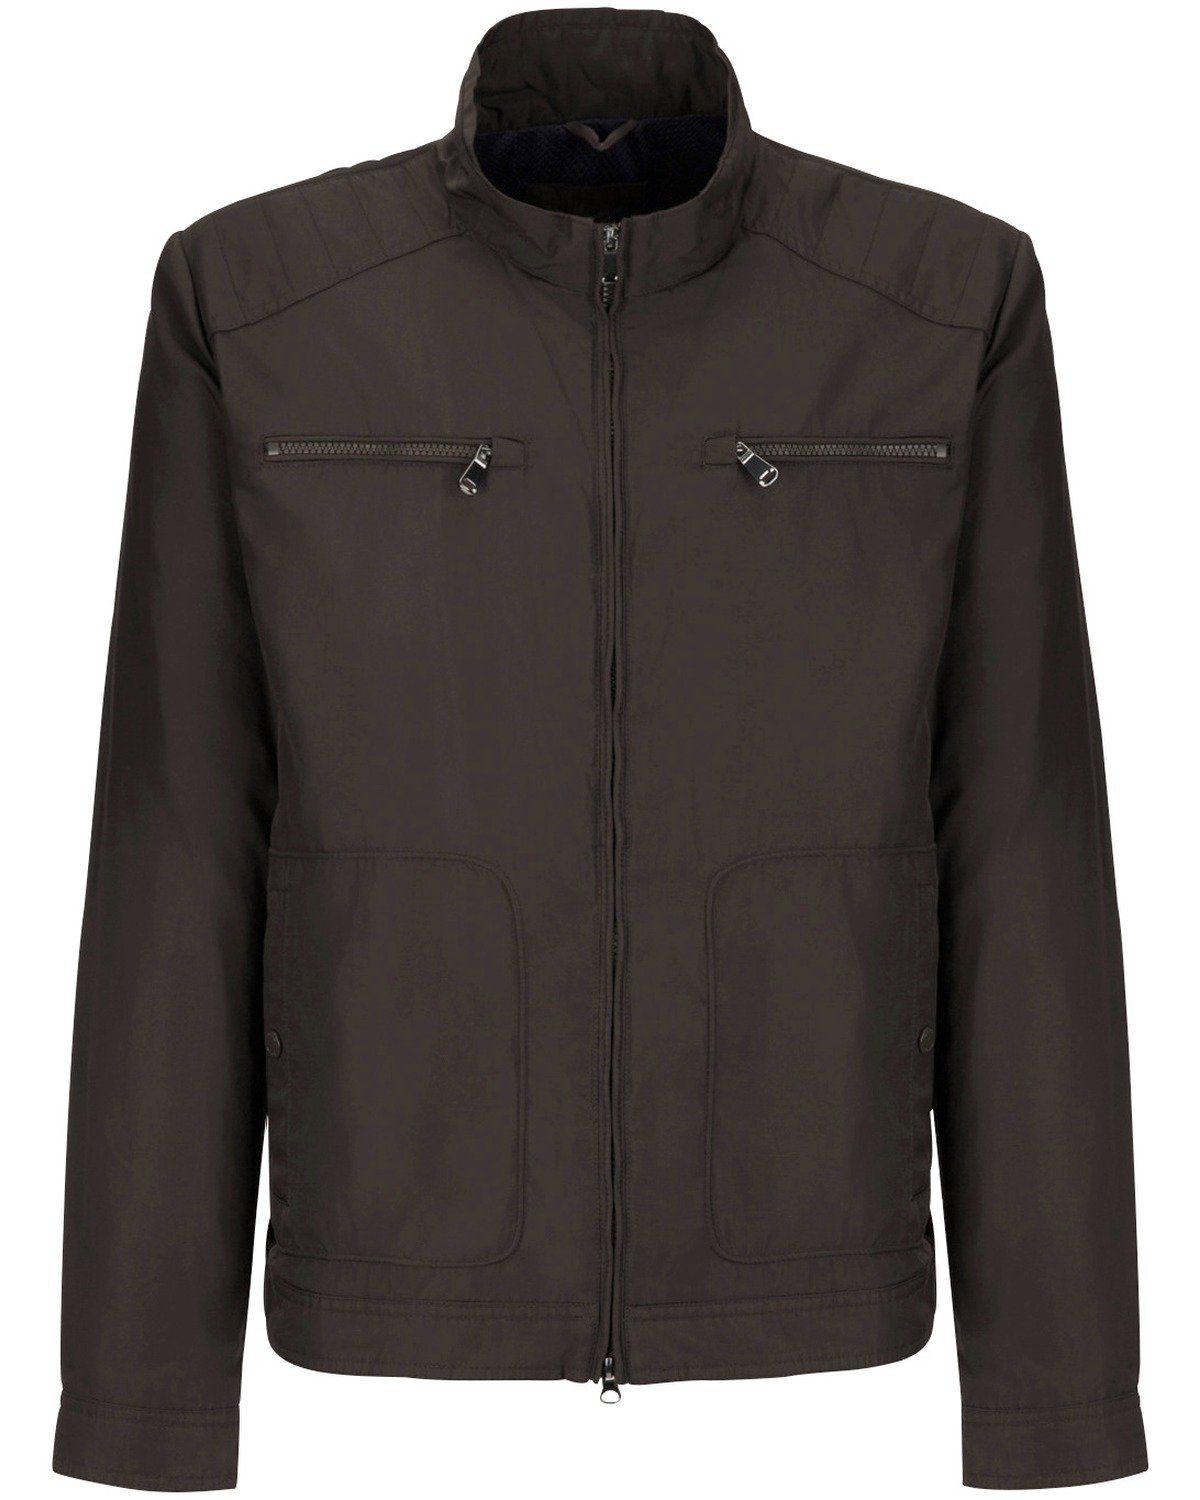 Geox Outdoorjacke »Jacke mit Stehkragen«, Verstellbare Saum- und Ärmelweite  online kaufen | OTTO